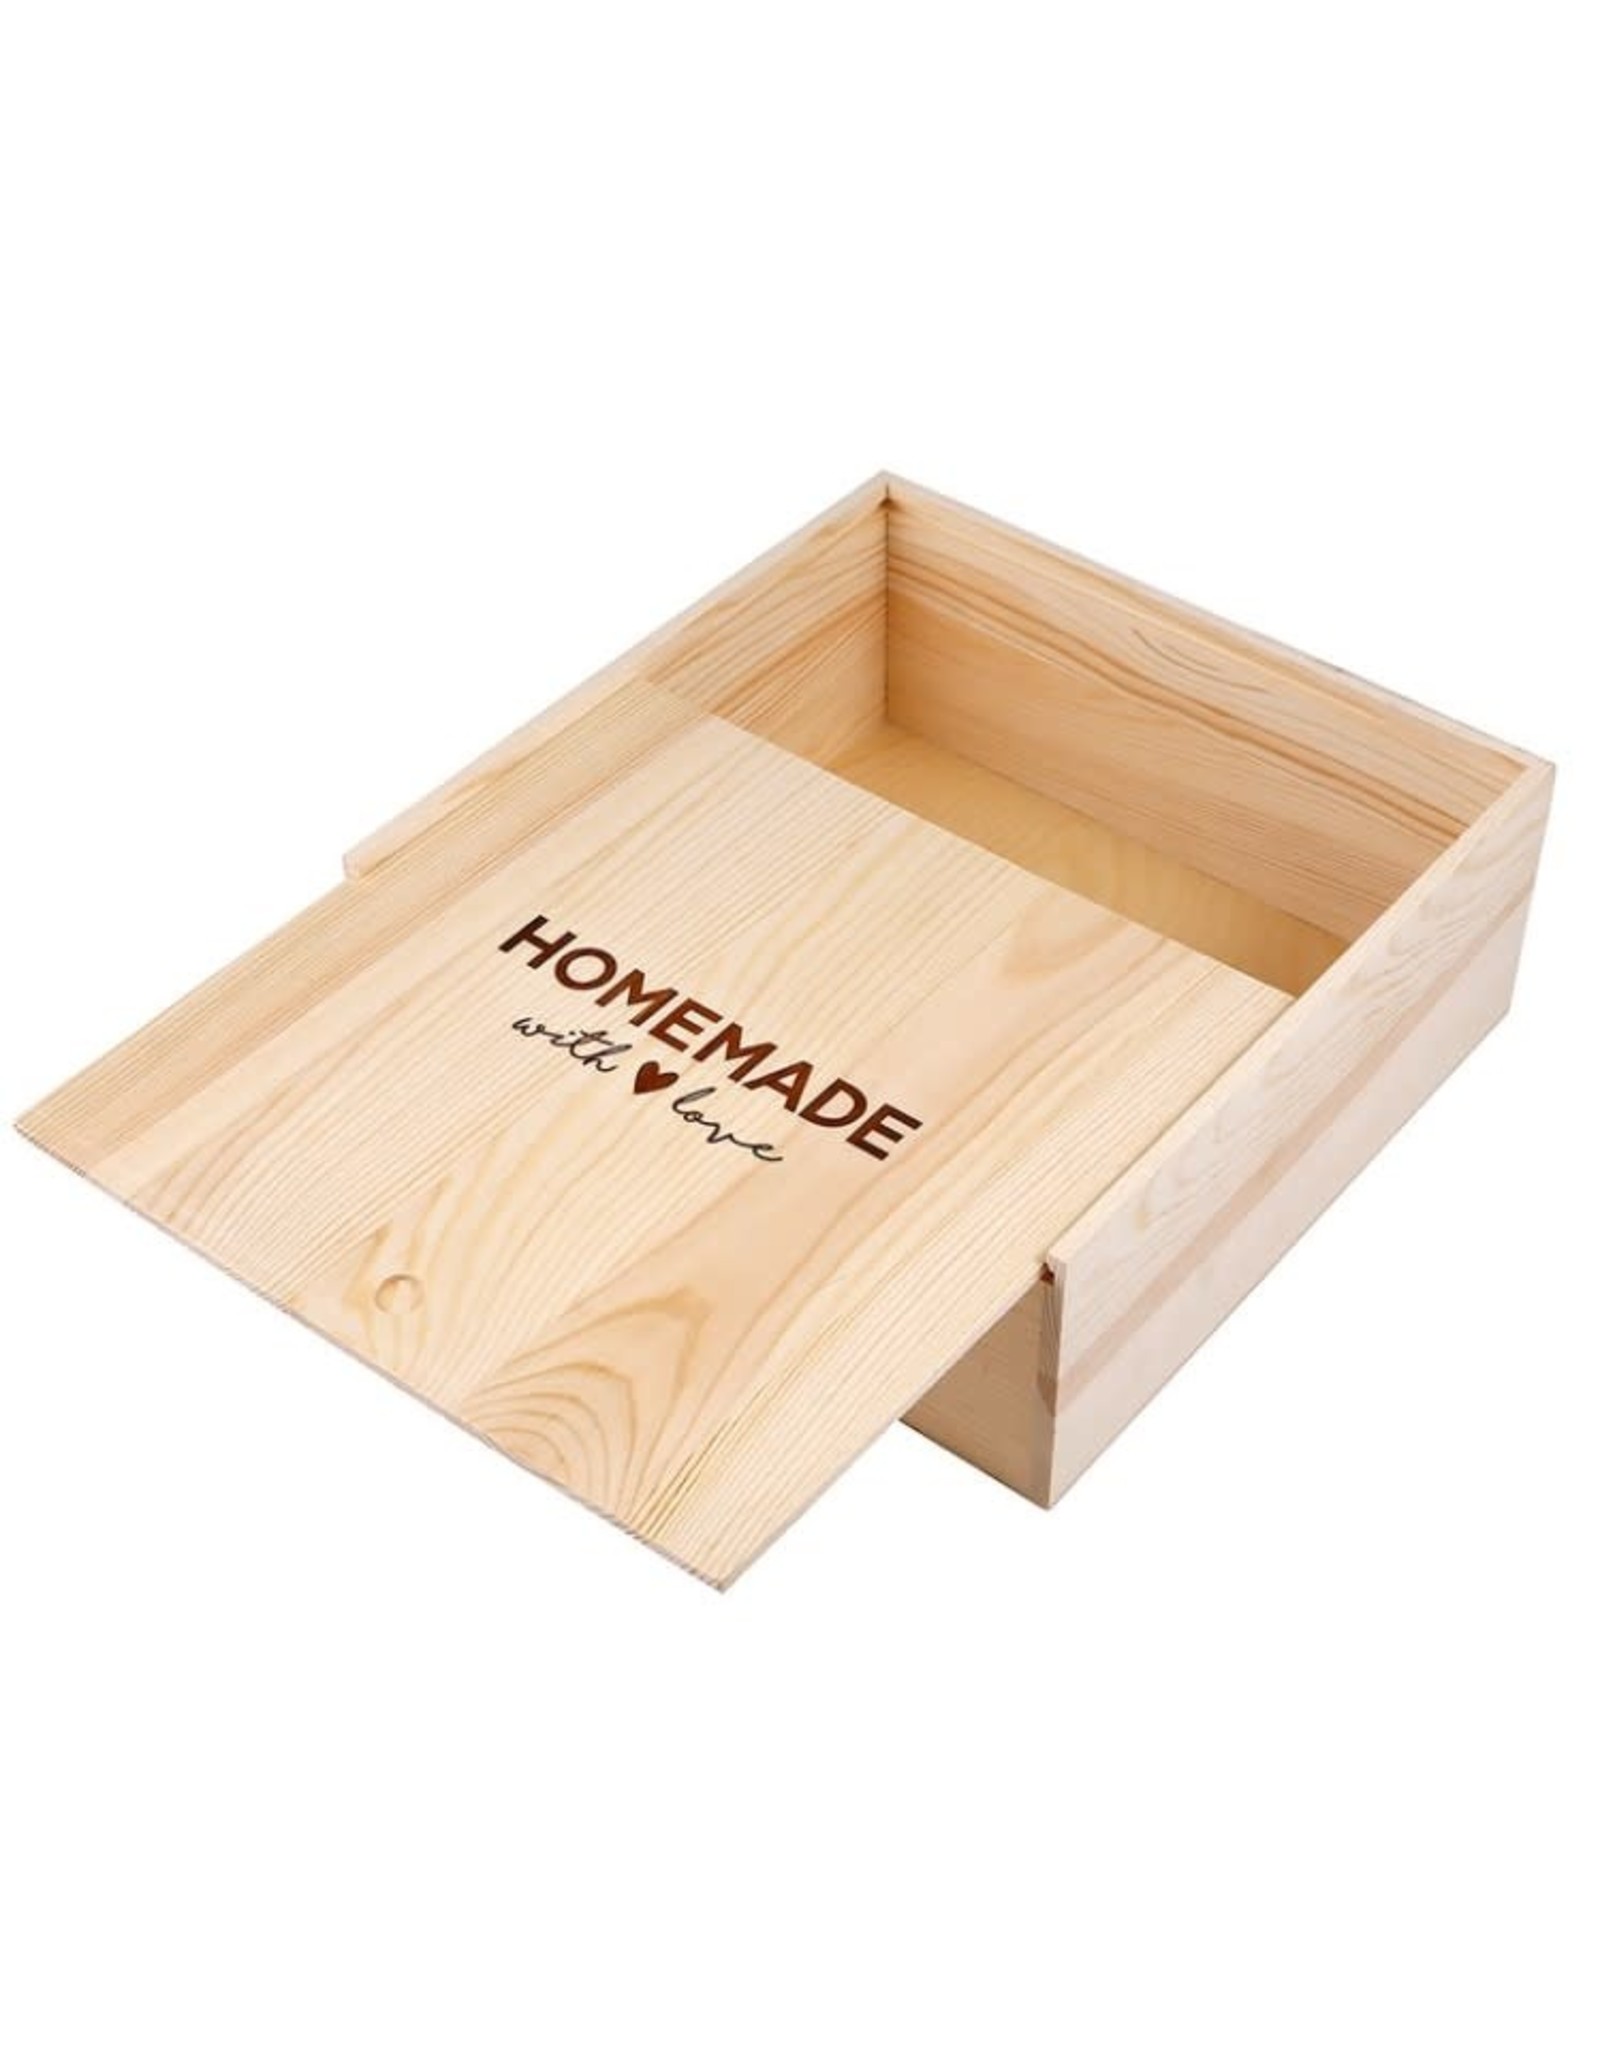 Santa Barbara Designs Homemade with Love Large Sweets Wood Box